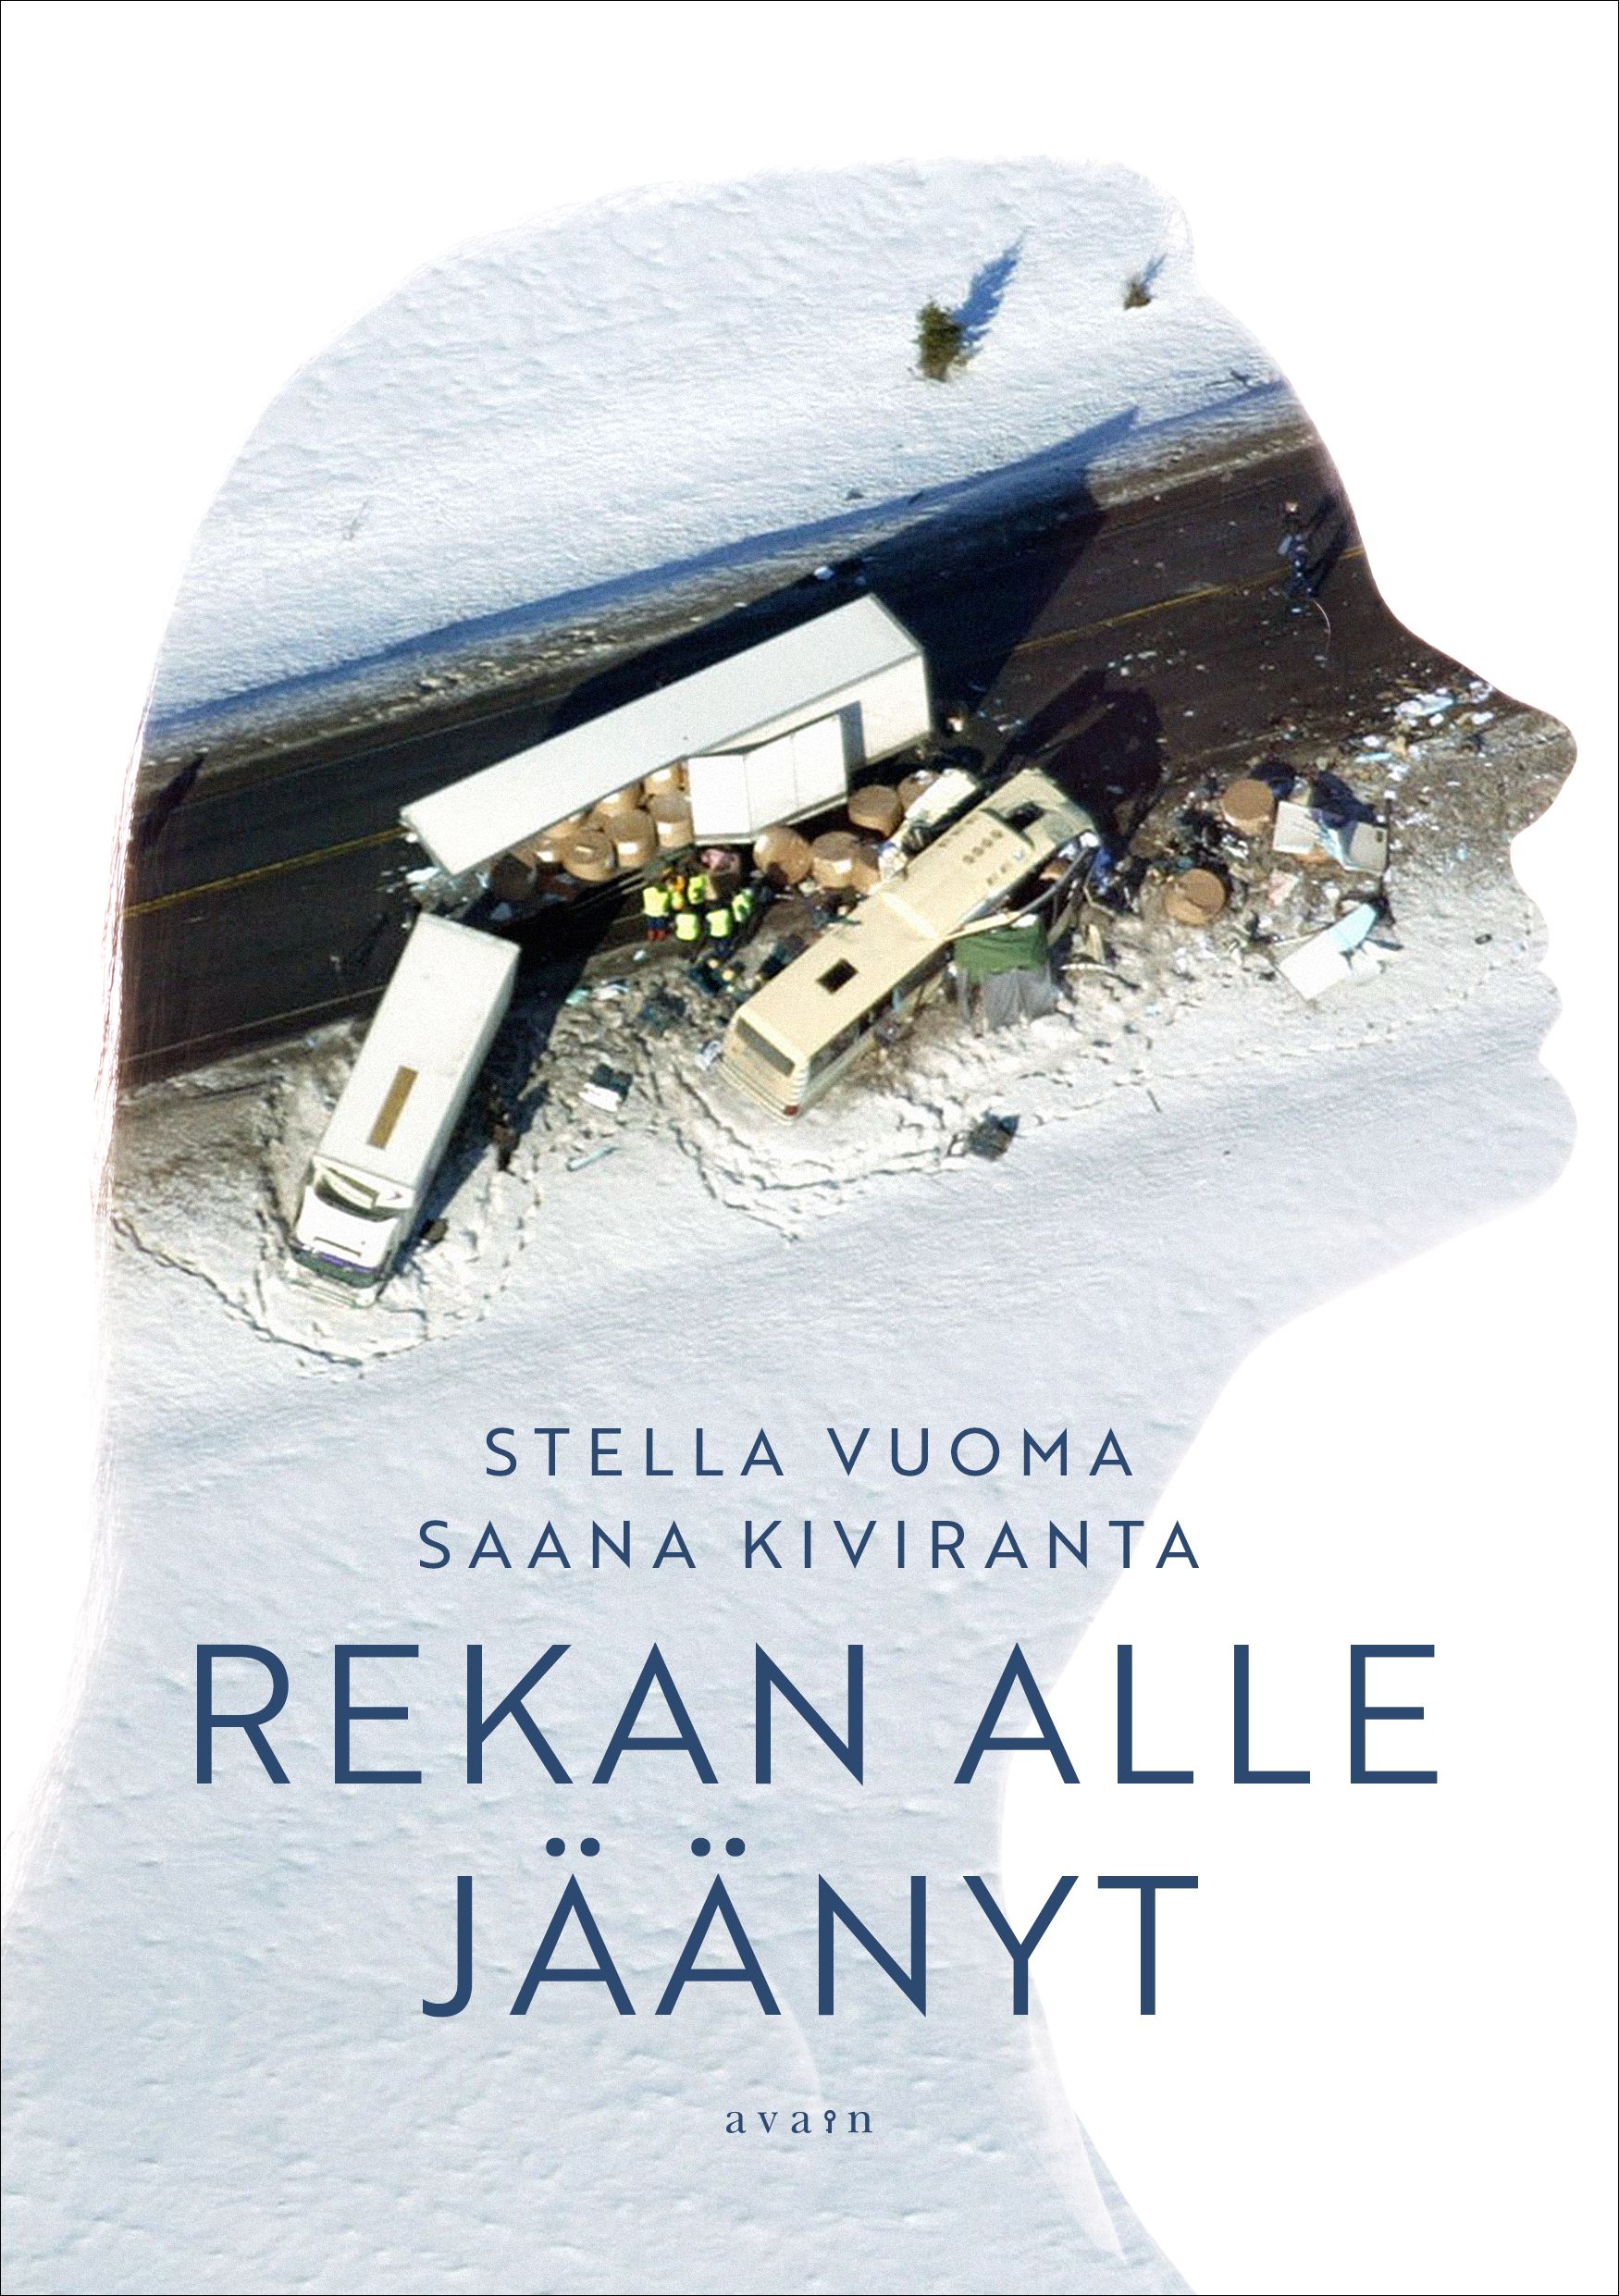 Stella Vuoma & Saana Kiviranta : Rekan alle jäänyt